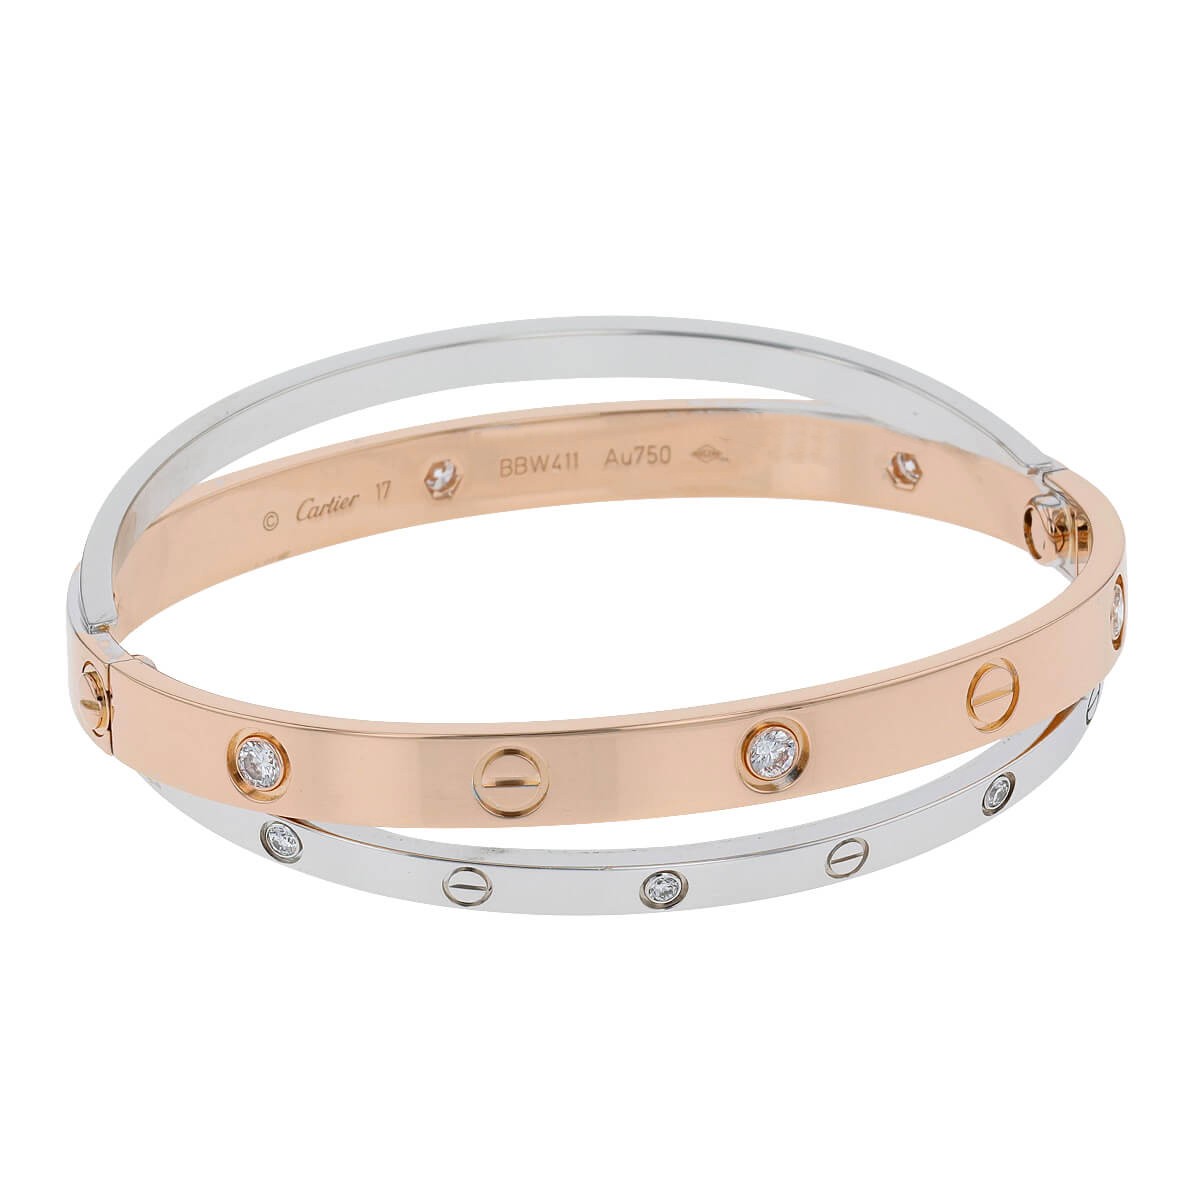 Cartier Double Love Bracelet 18k Rose Gold With Diamonds Auction